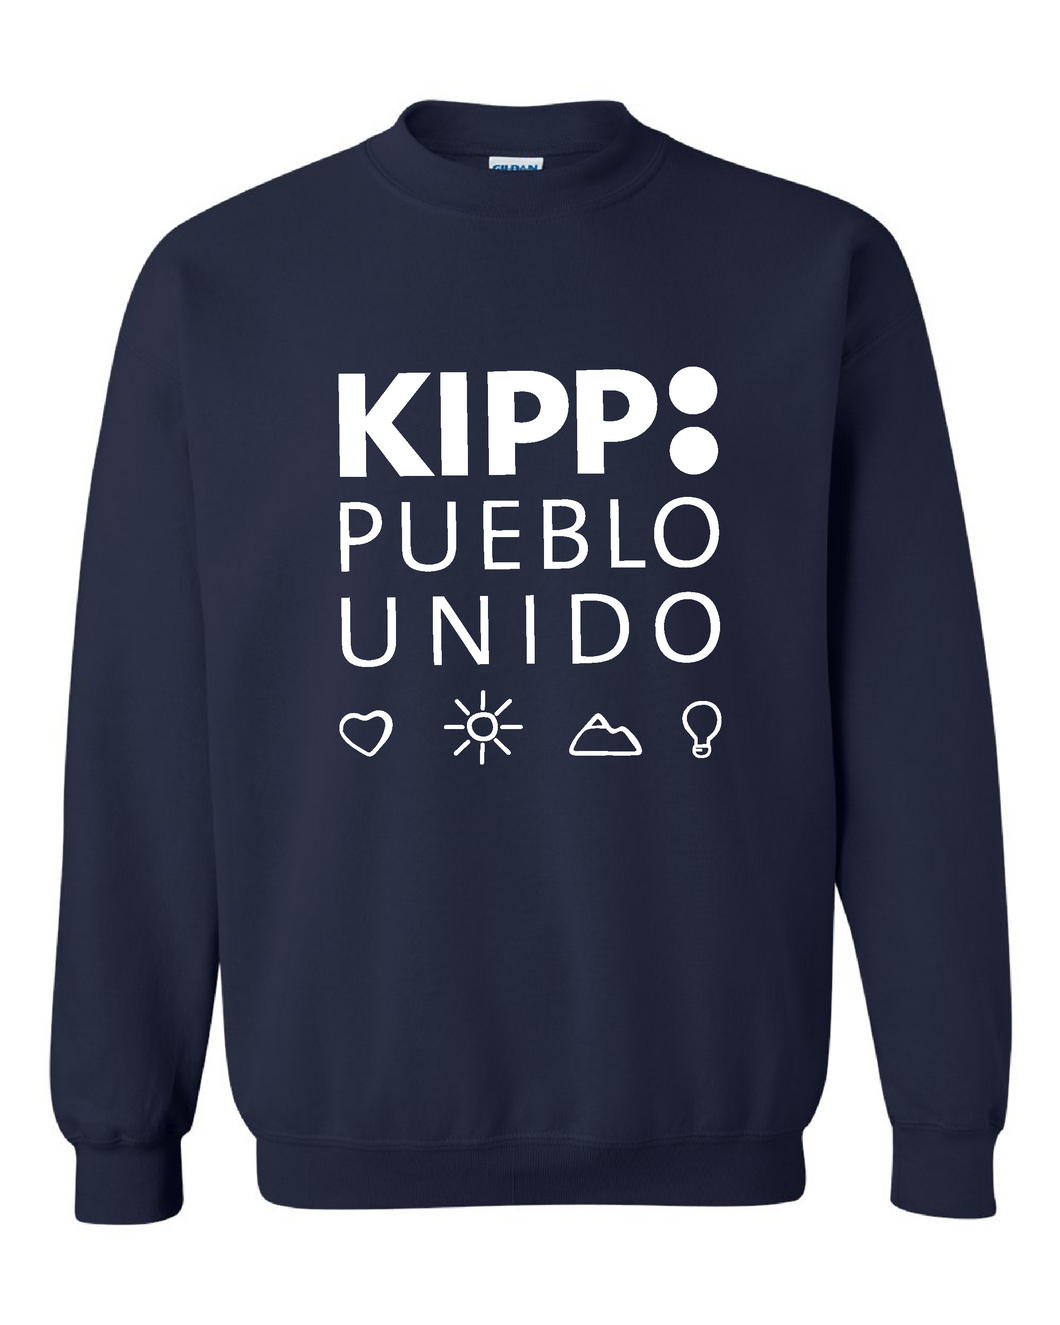 KIPP Pueblo Unido Crewneck Sweater